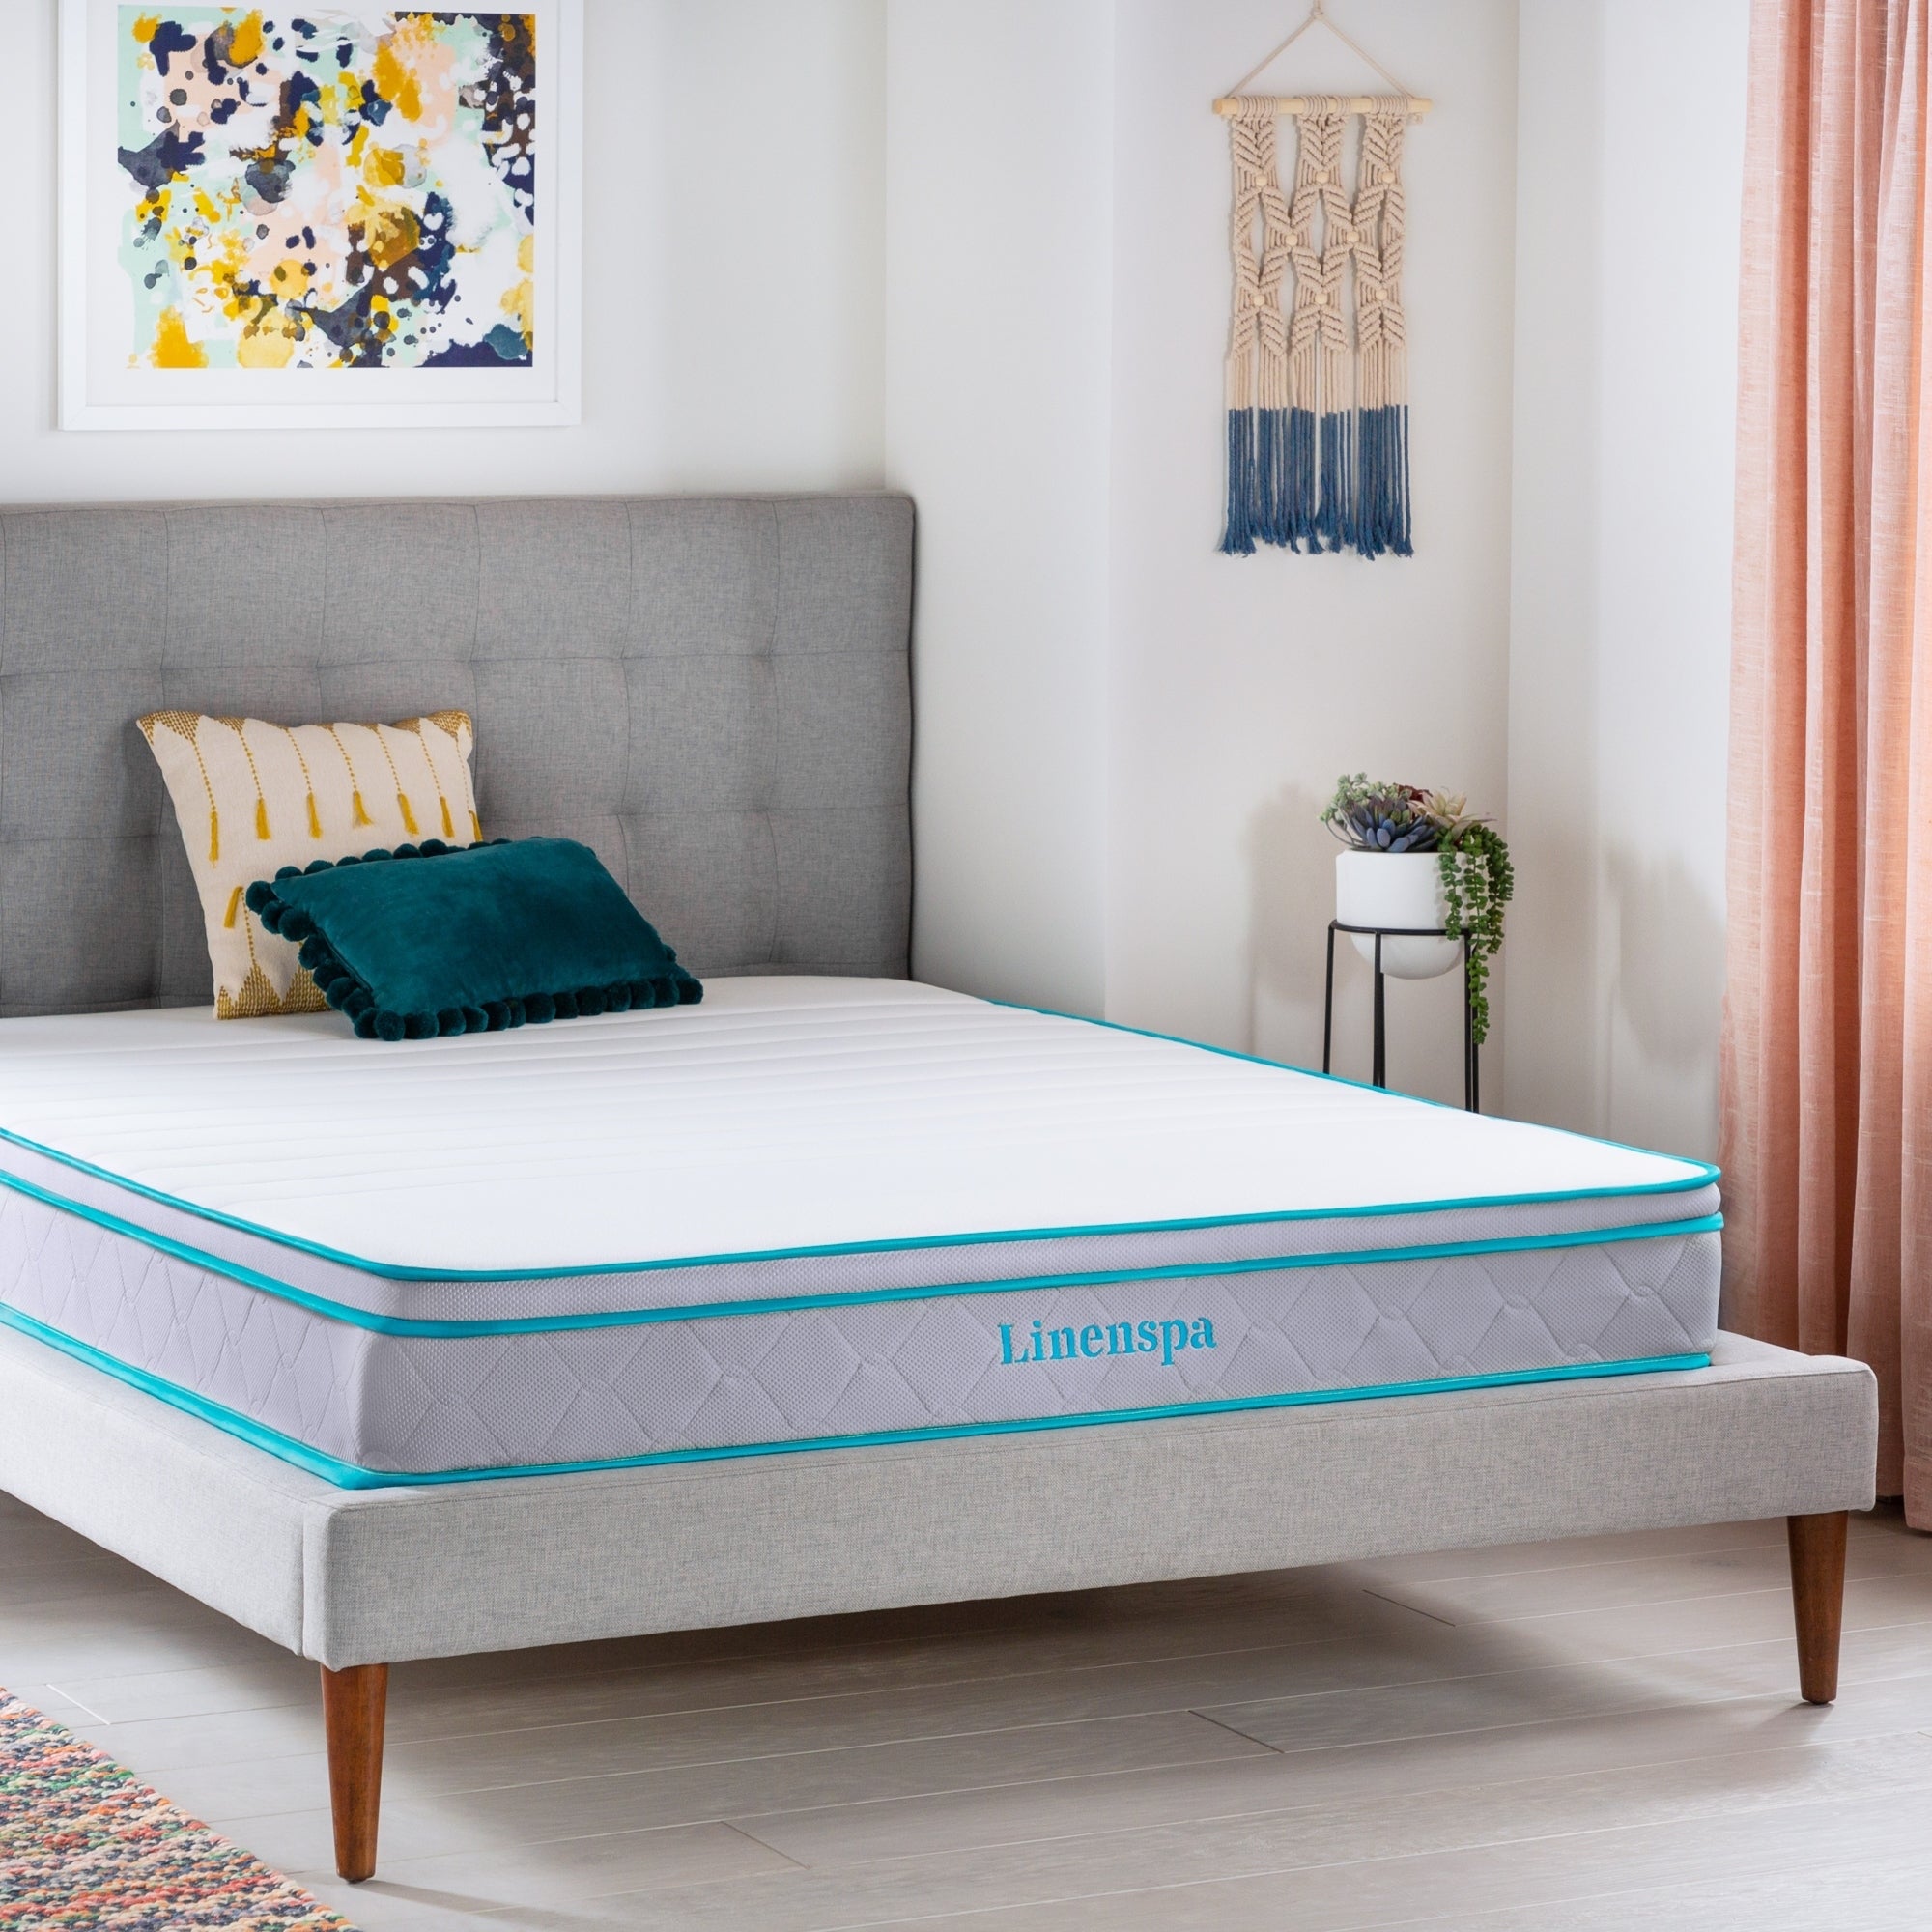 A Linenspa mattress on a platform bed